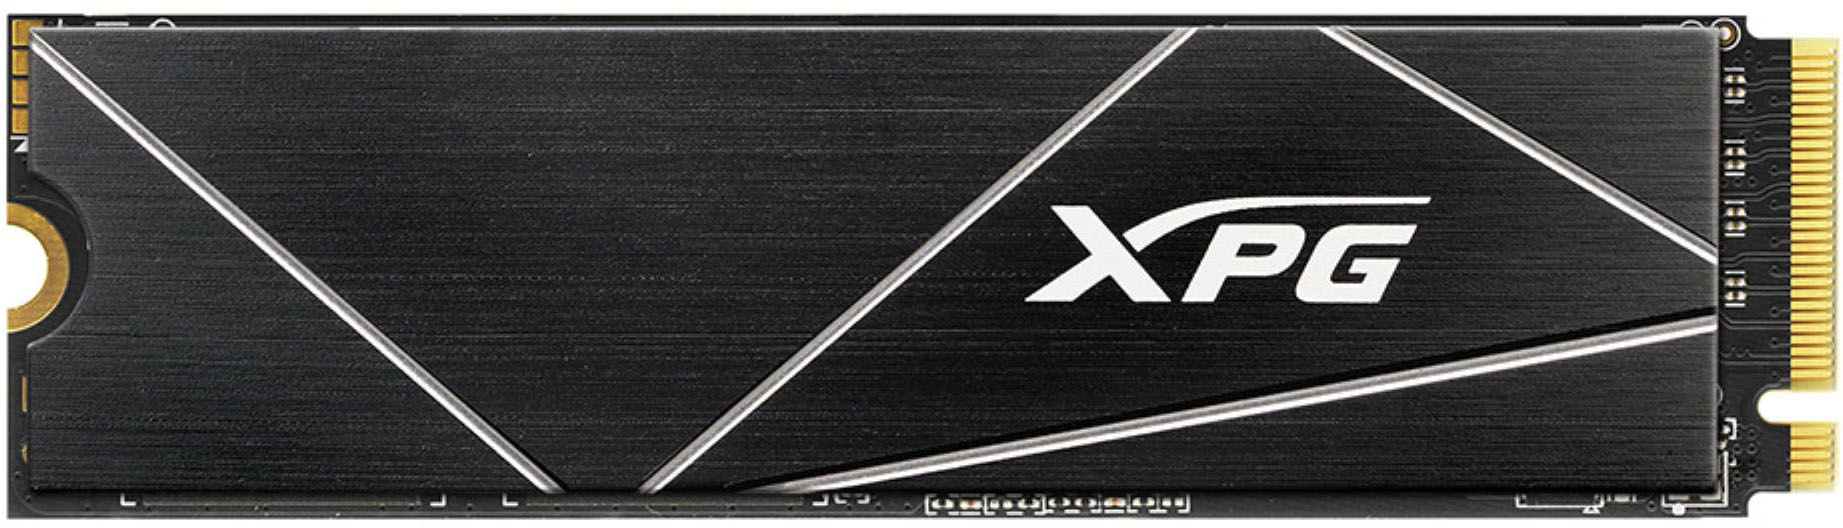 2TB ADATA XPG GAMMIX S70 Blade PCIe NVMe M.2 2280 Gen4 x4 SSD w/ Heatsink $219.99 + Free Shipping